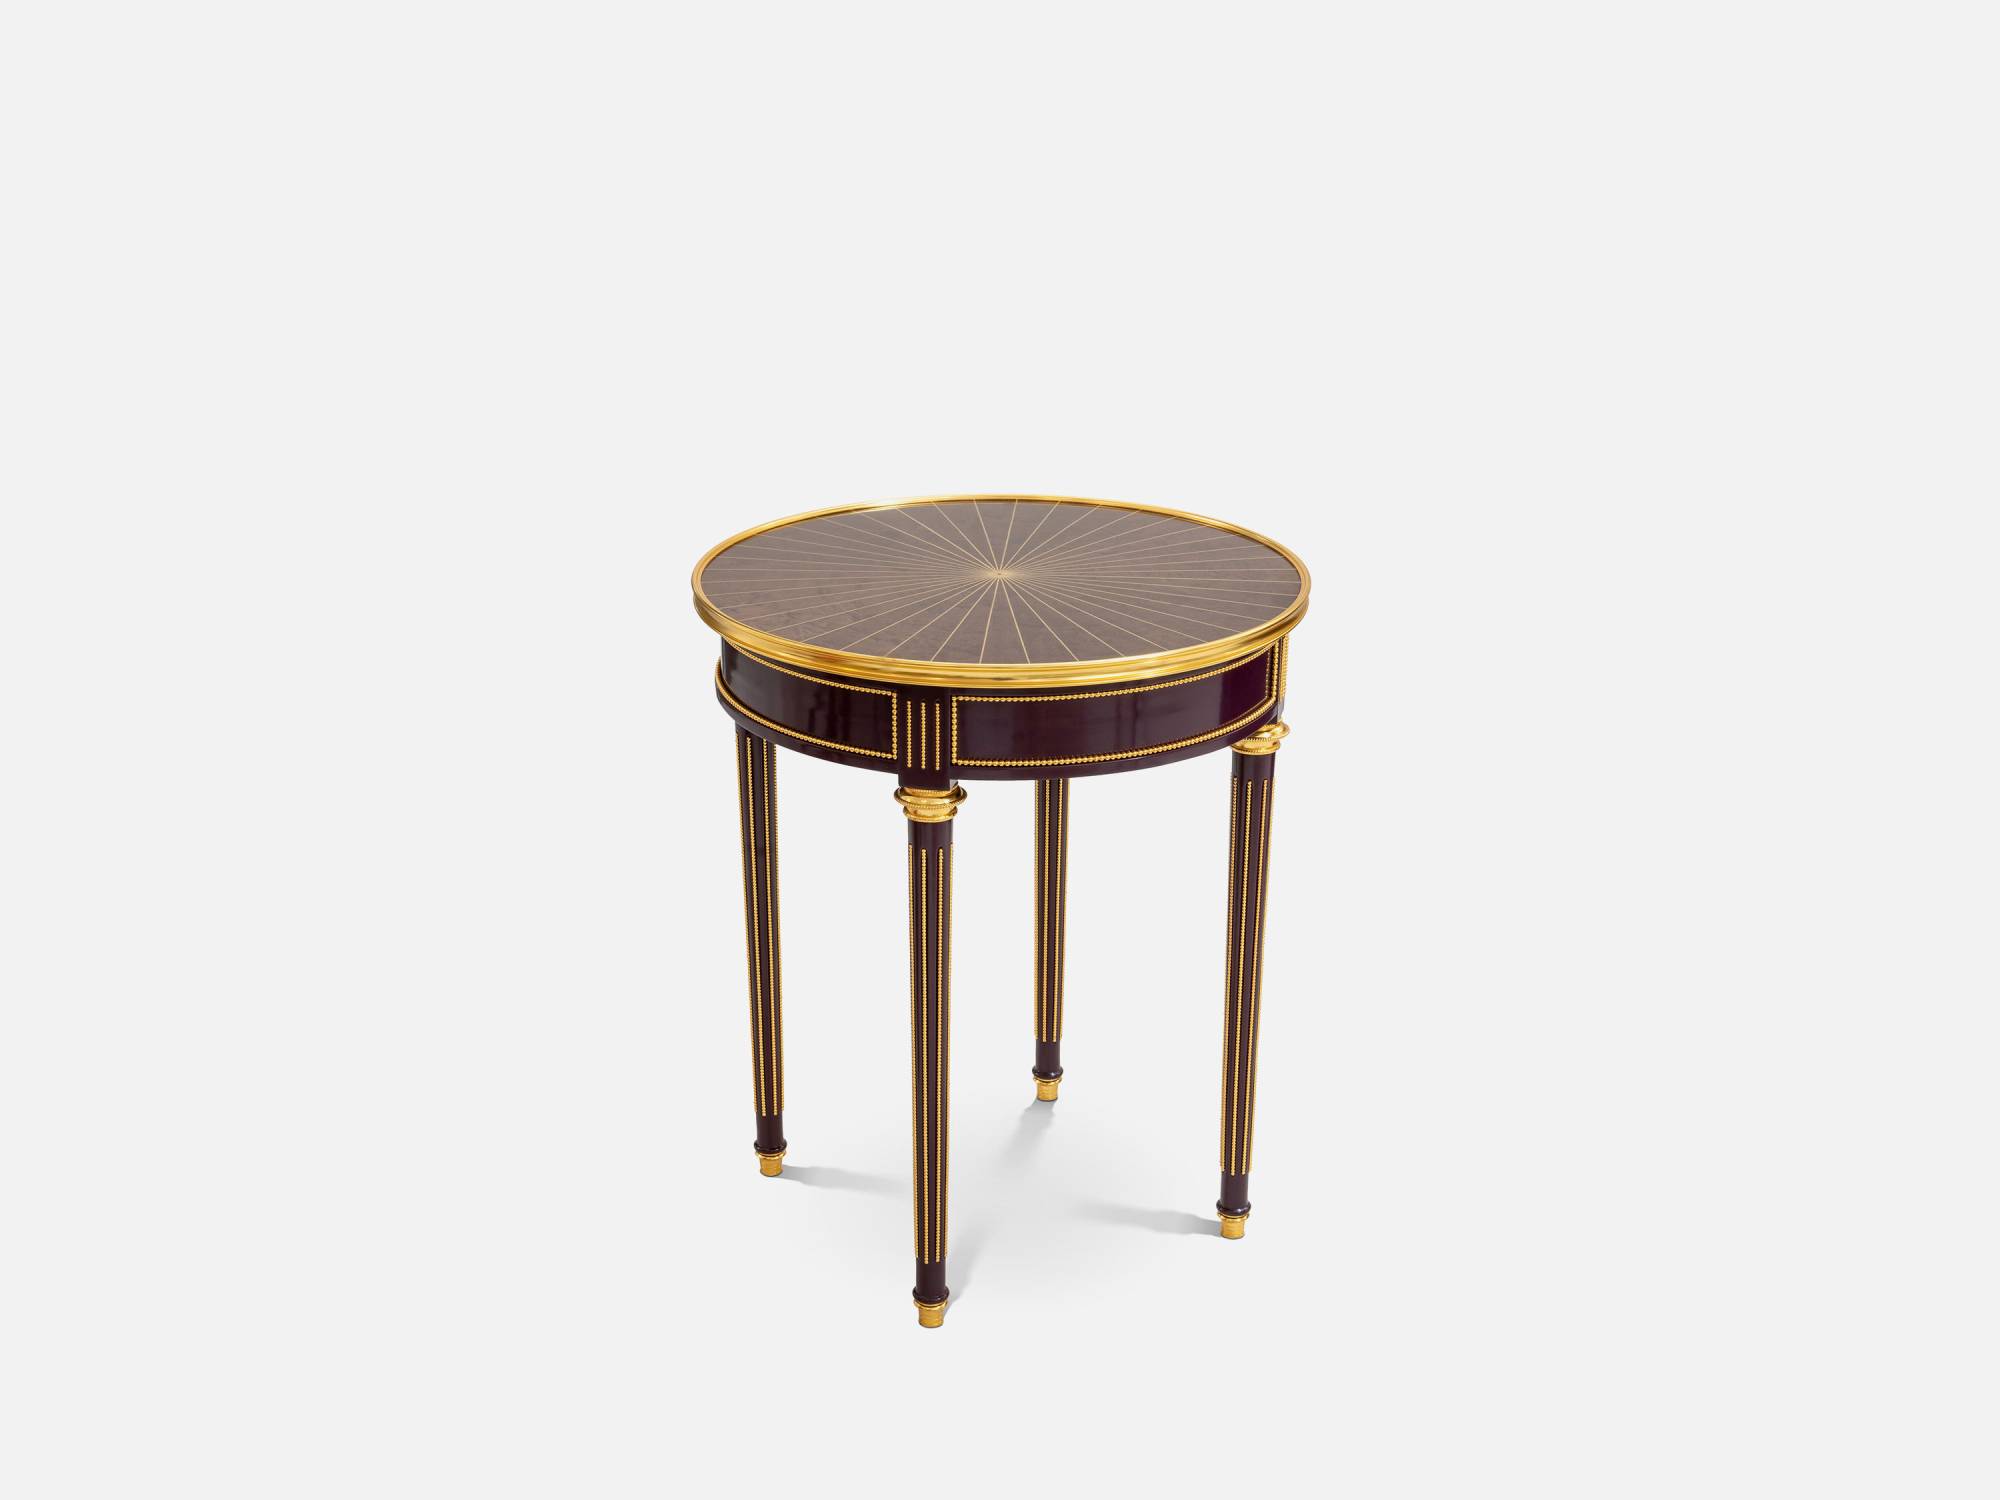 ART. 2303 – C.G. Capelletti Italian Luxury Classic Small tables. Made in Italy classic interior design